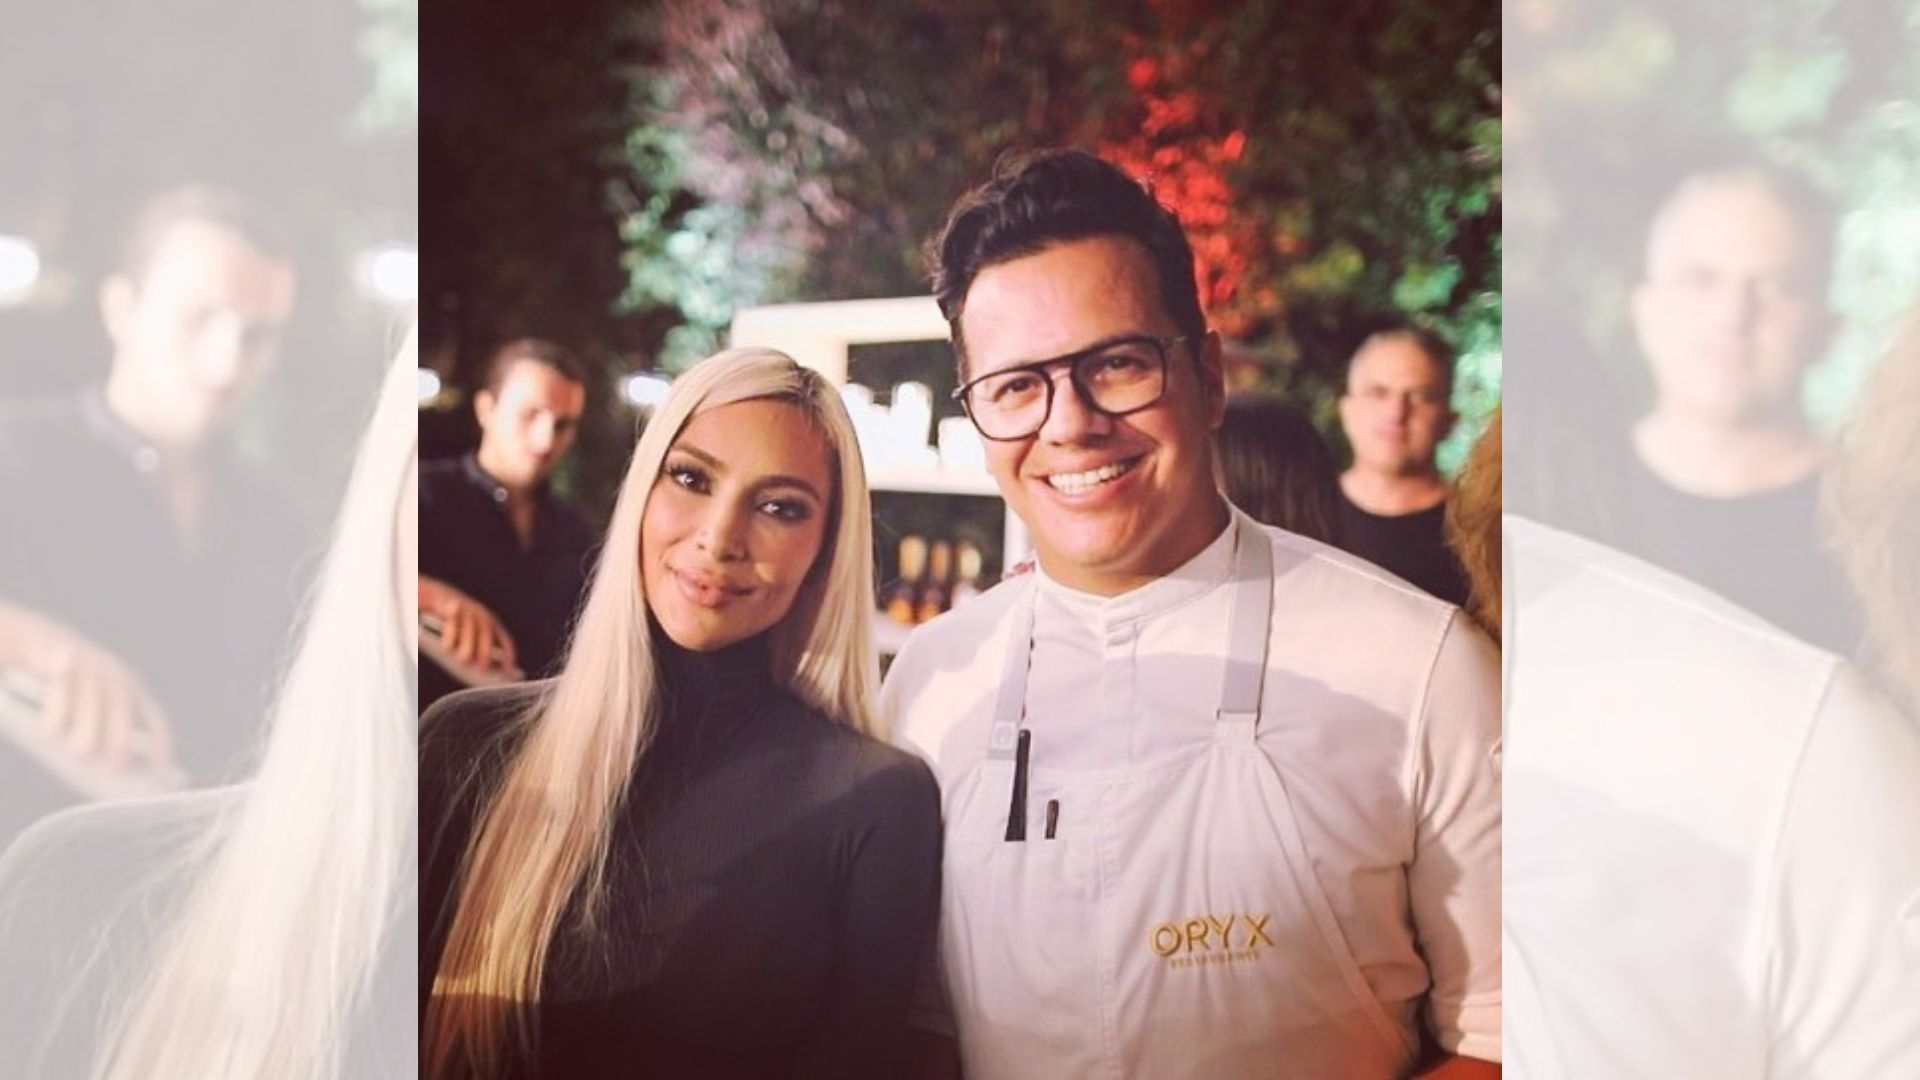 Chef Ruffo Ibarra "elogia" a Kim Kardashian